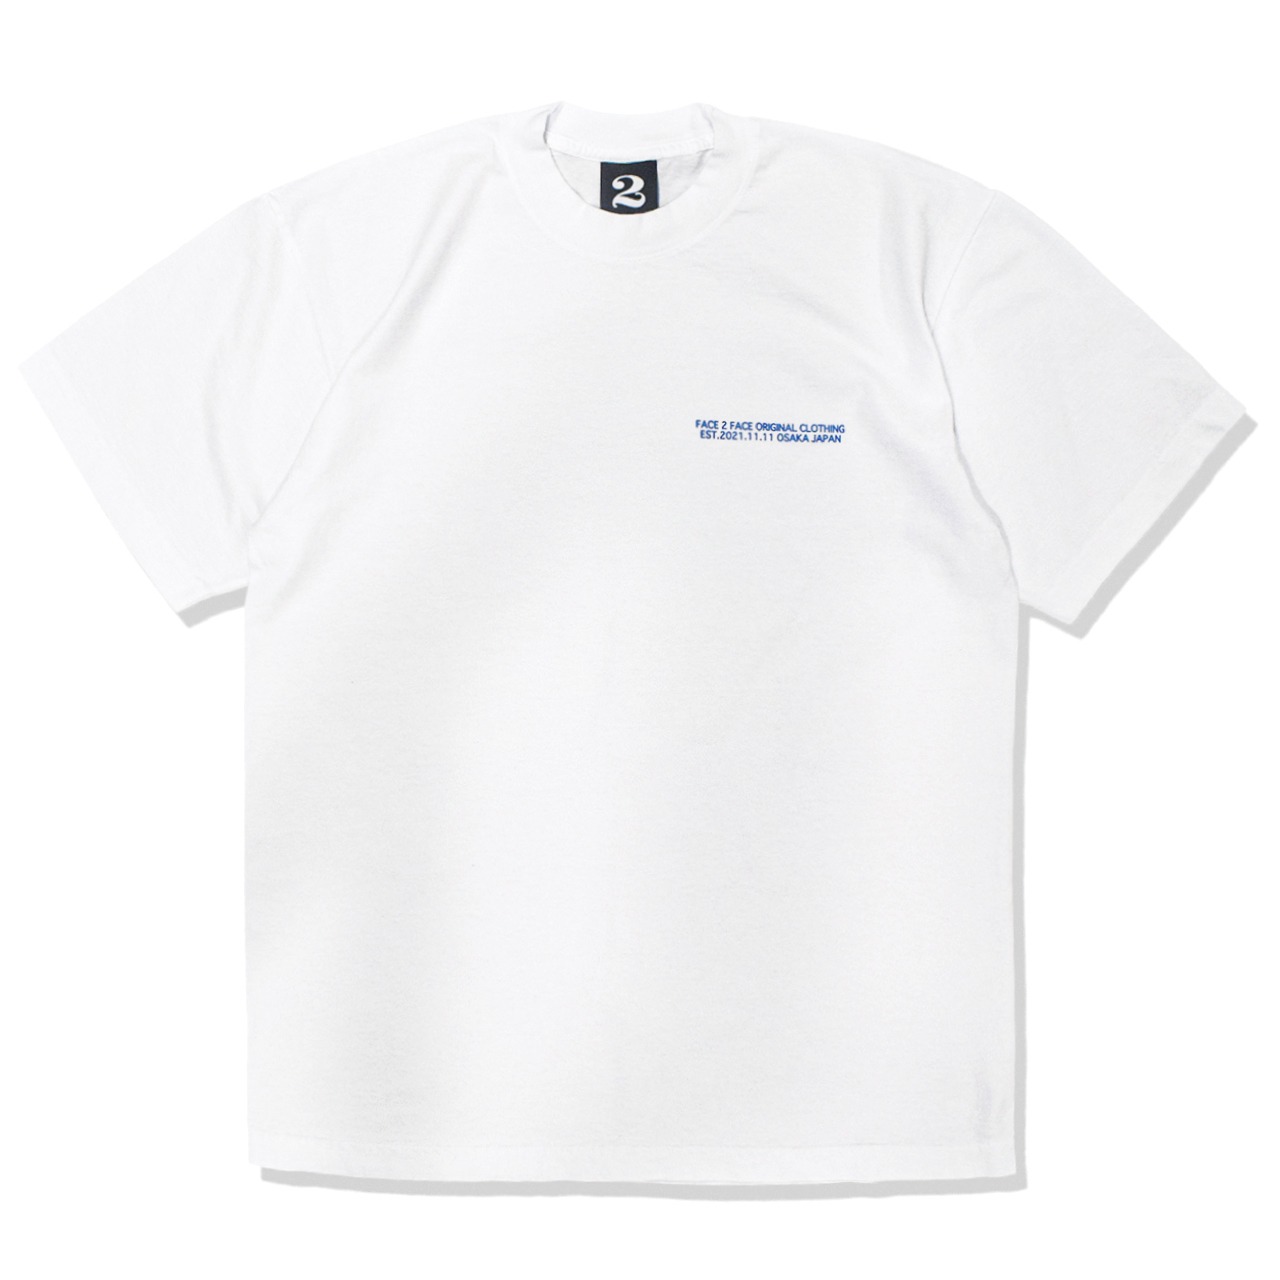 F2F #001 tshirts - white